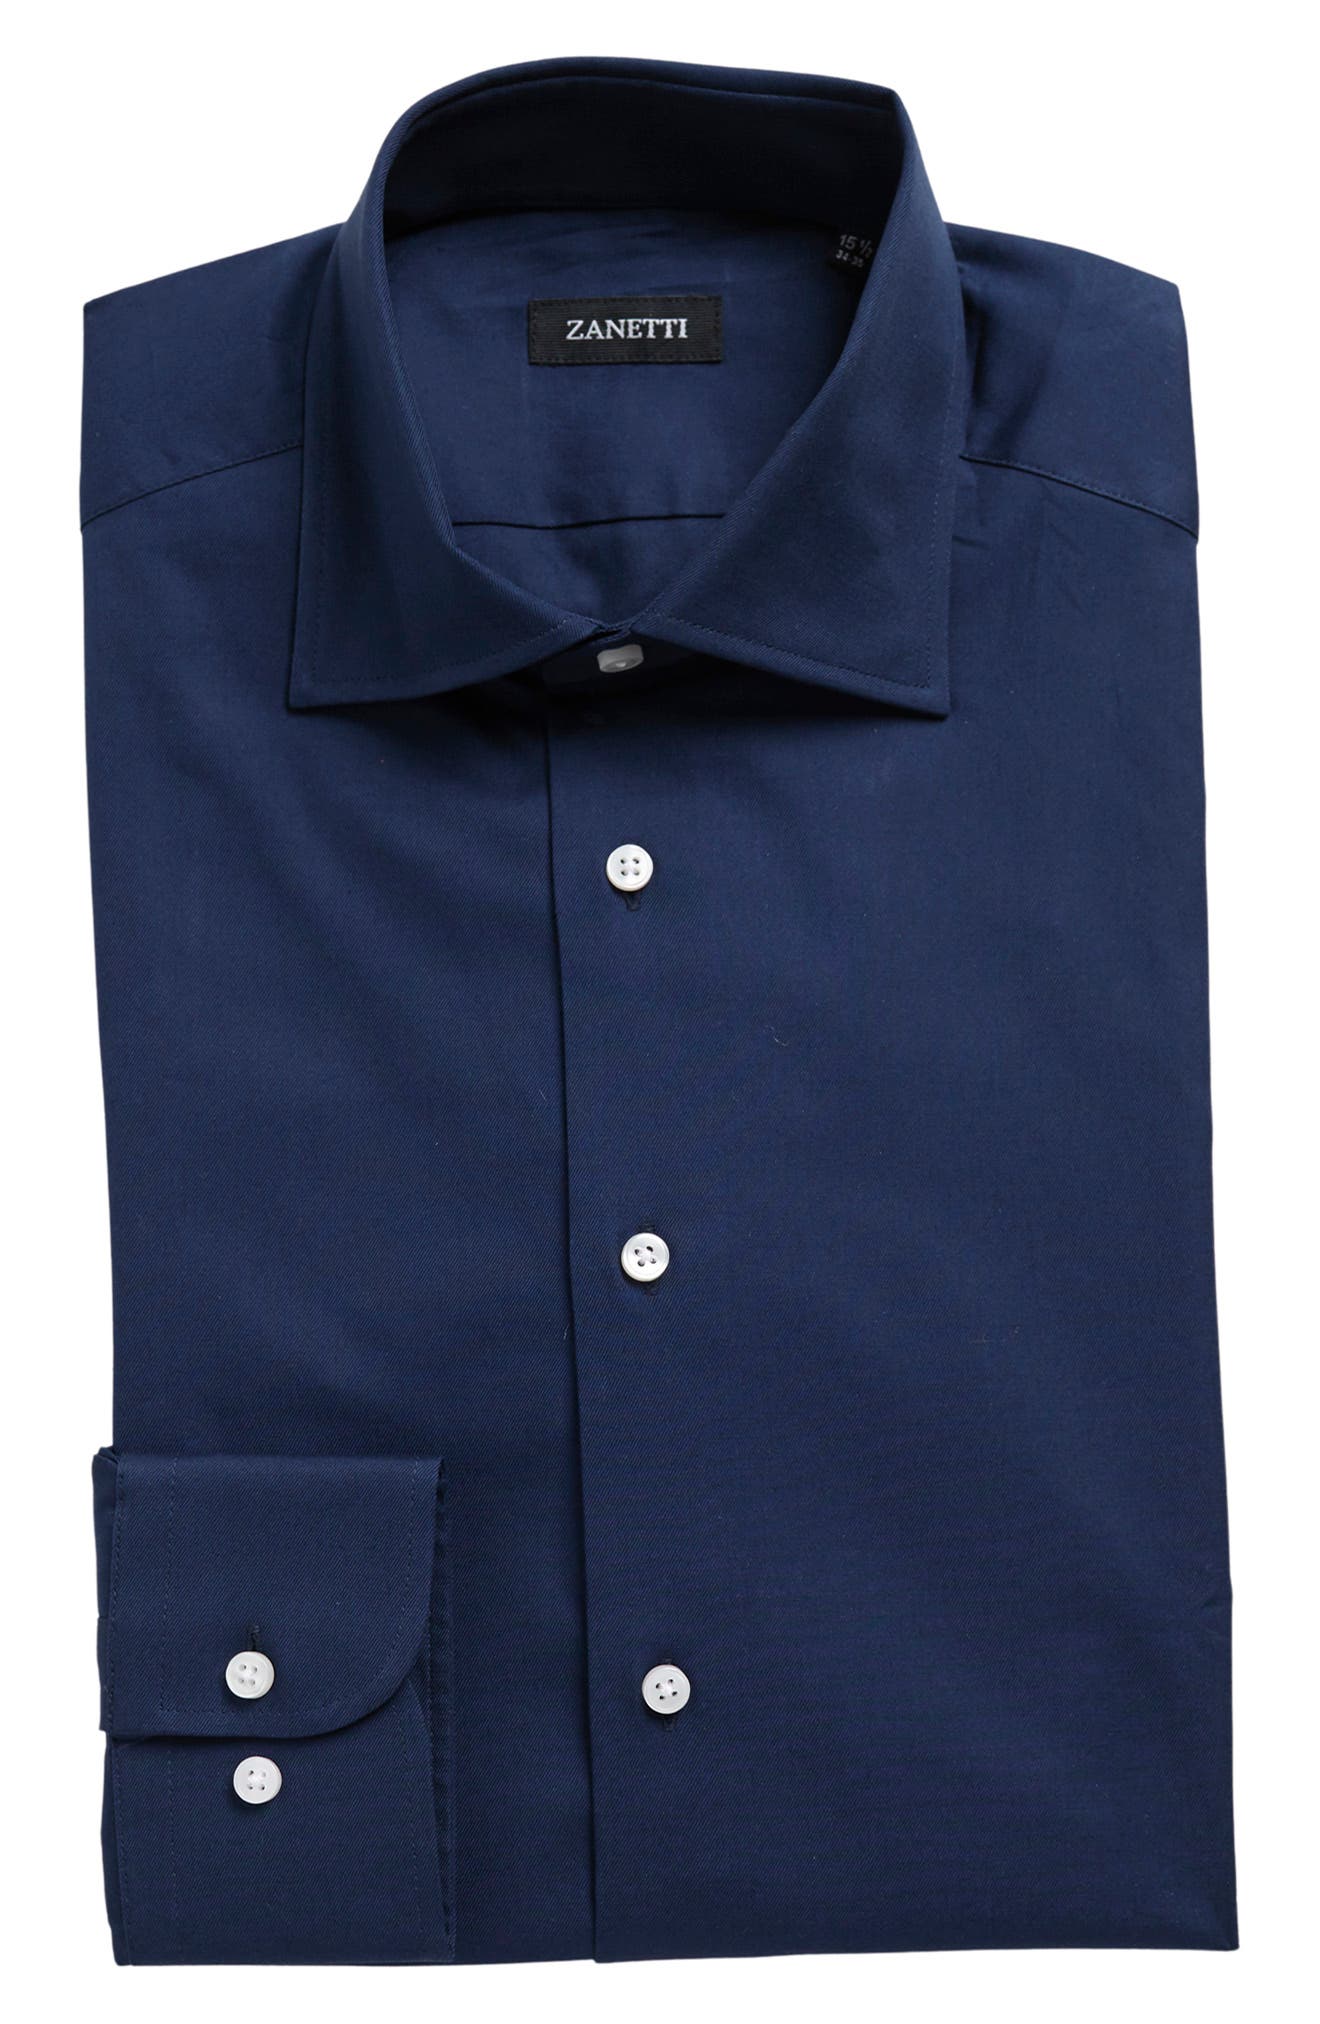 Mens Nicole Miller New York 15.5 32/33  Dress Shirt Button Up Blue Modern Fit 